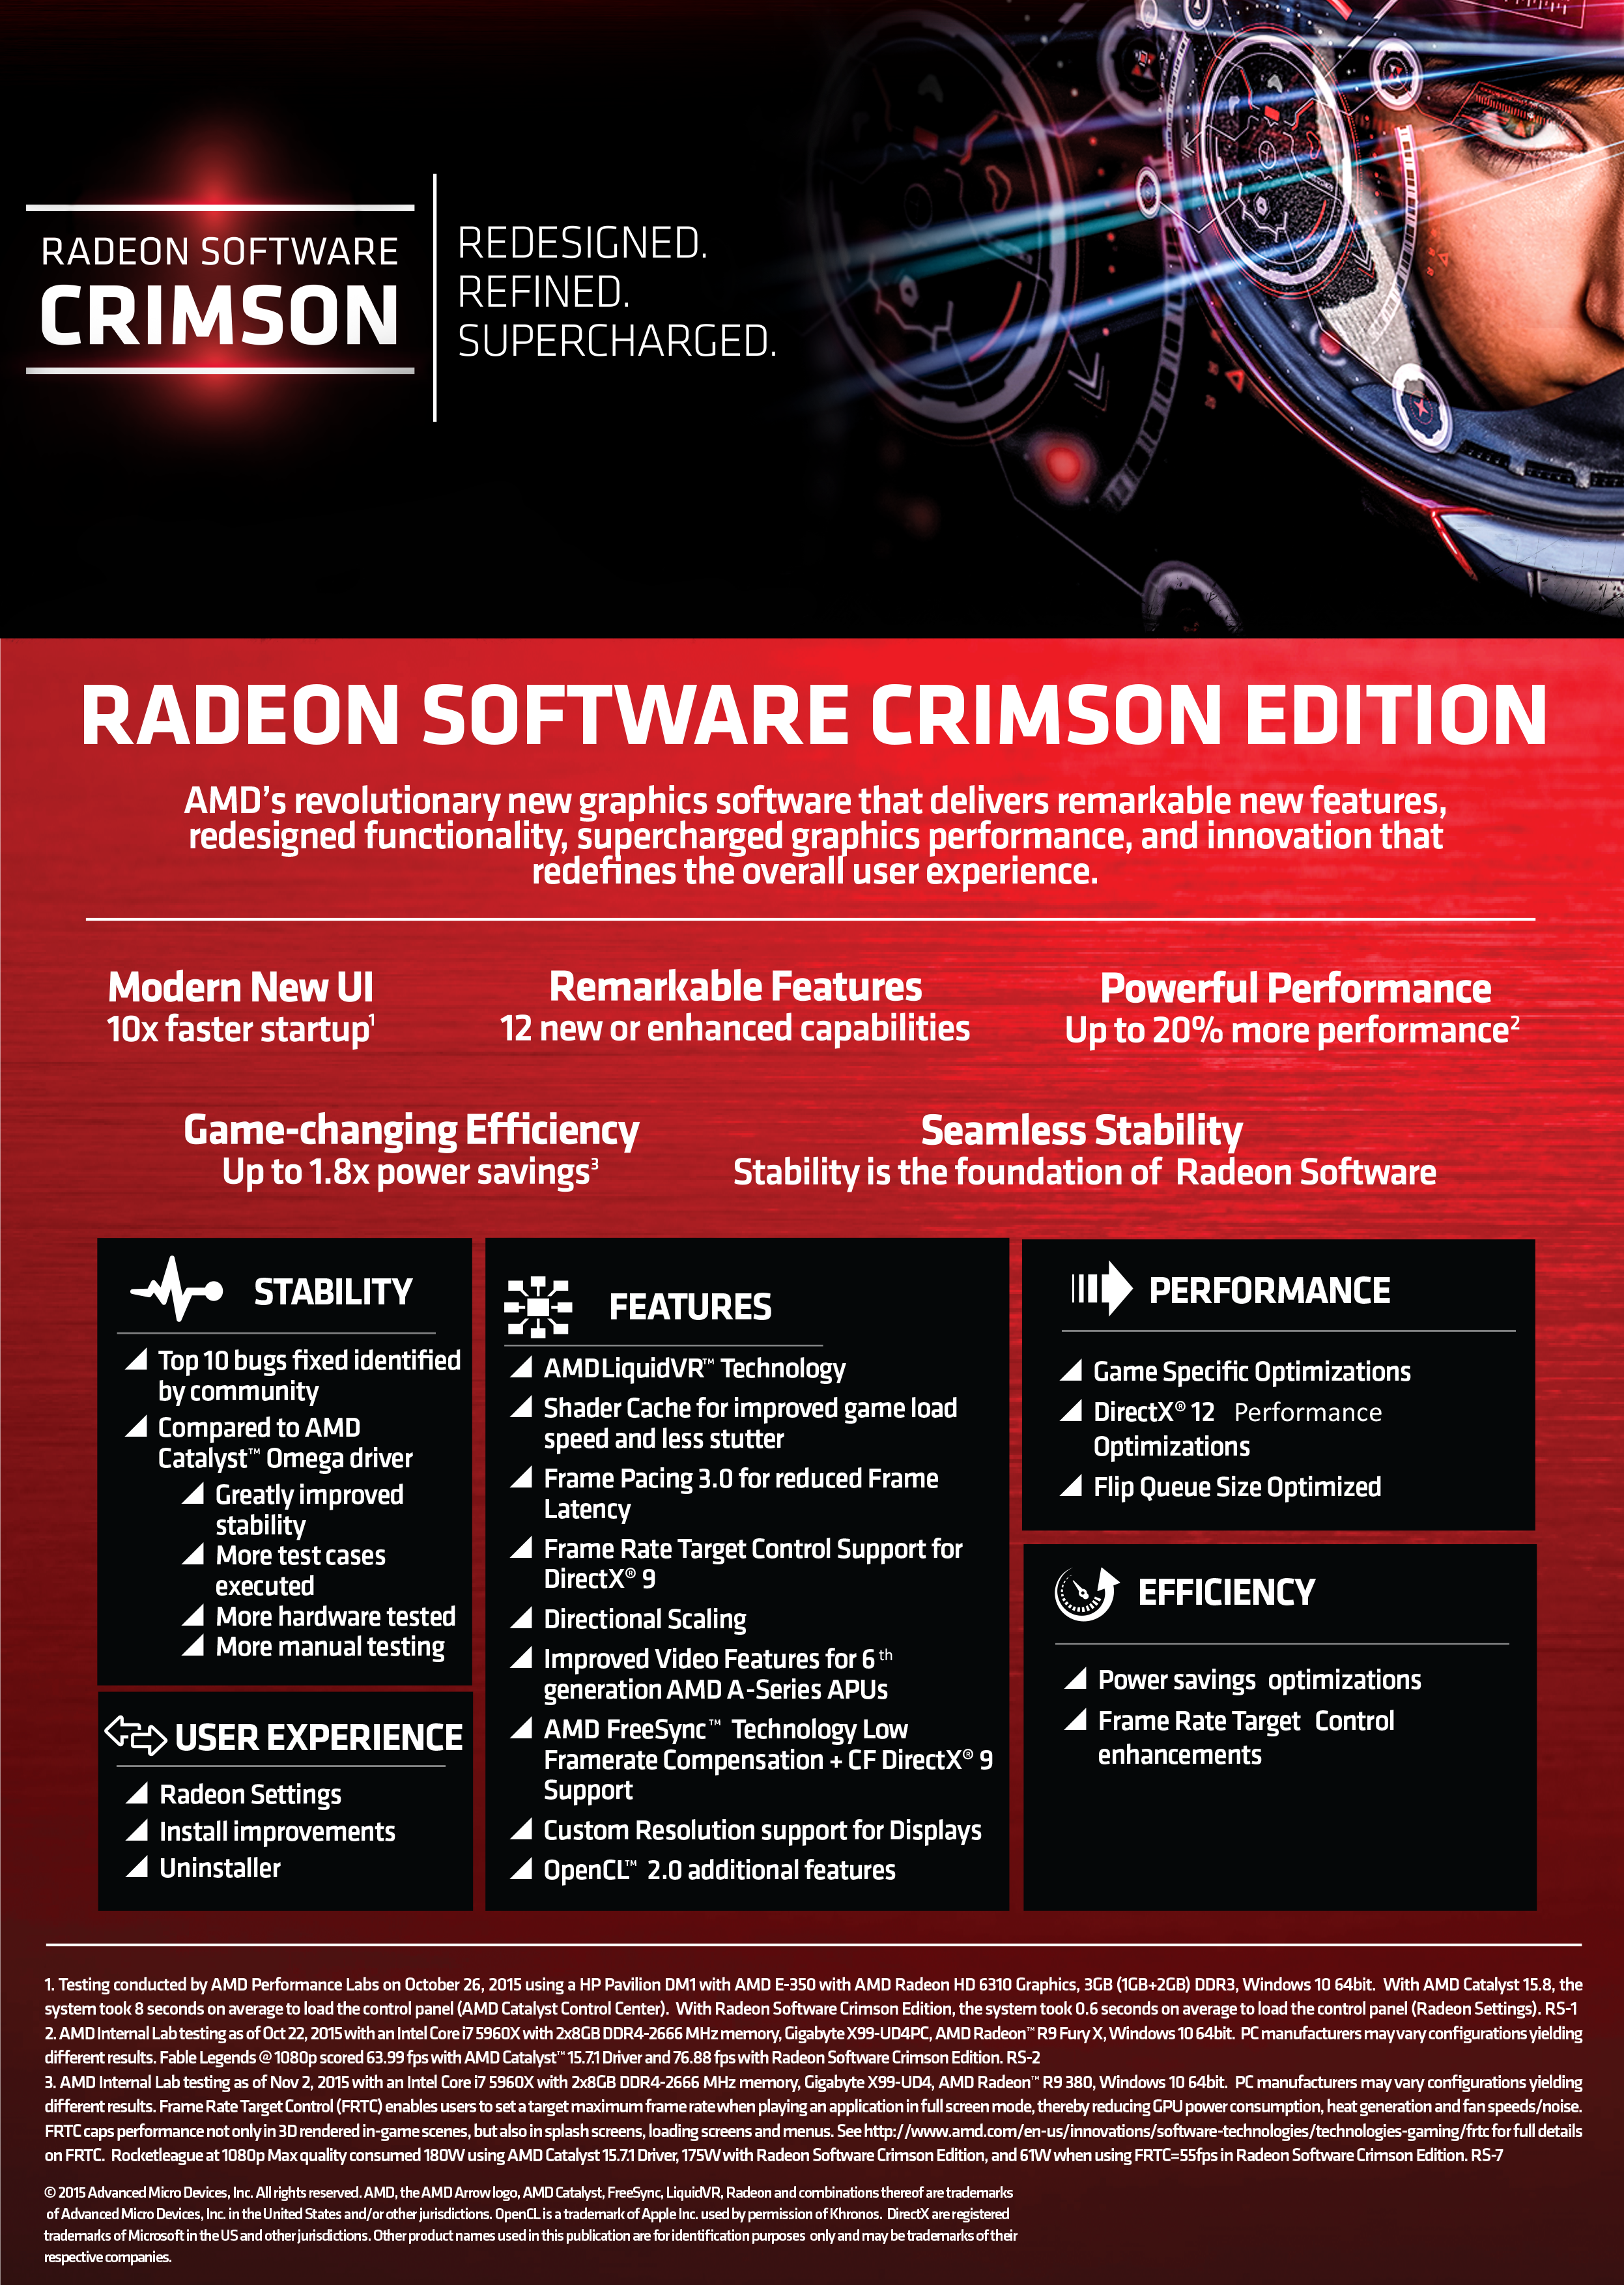 Risorsa grafica - foto, screenshot o immagine in genere - relativa ai contenuti pubblicati da amdzone.it | Nome immagine: news23396_AMD-Radeon-Crimson-Software_1.png